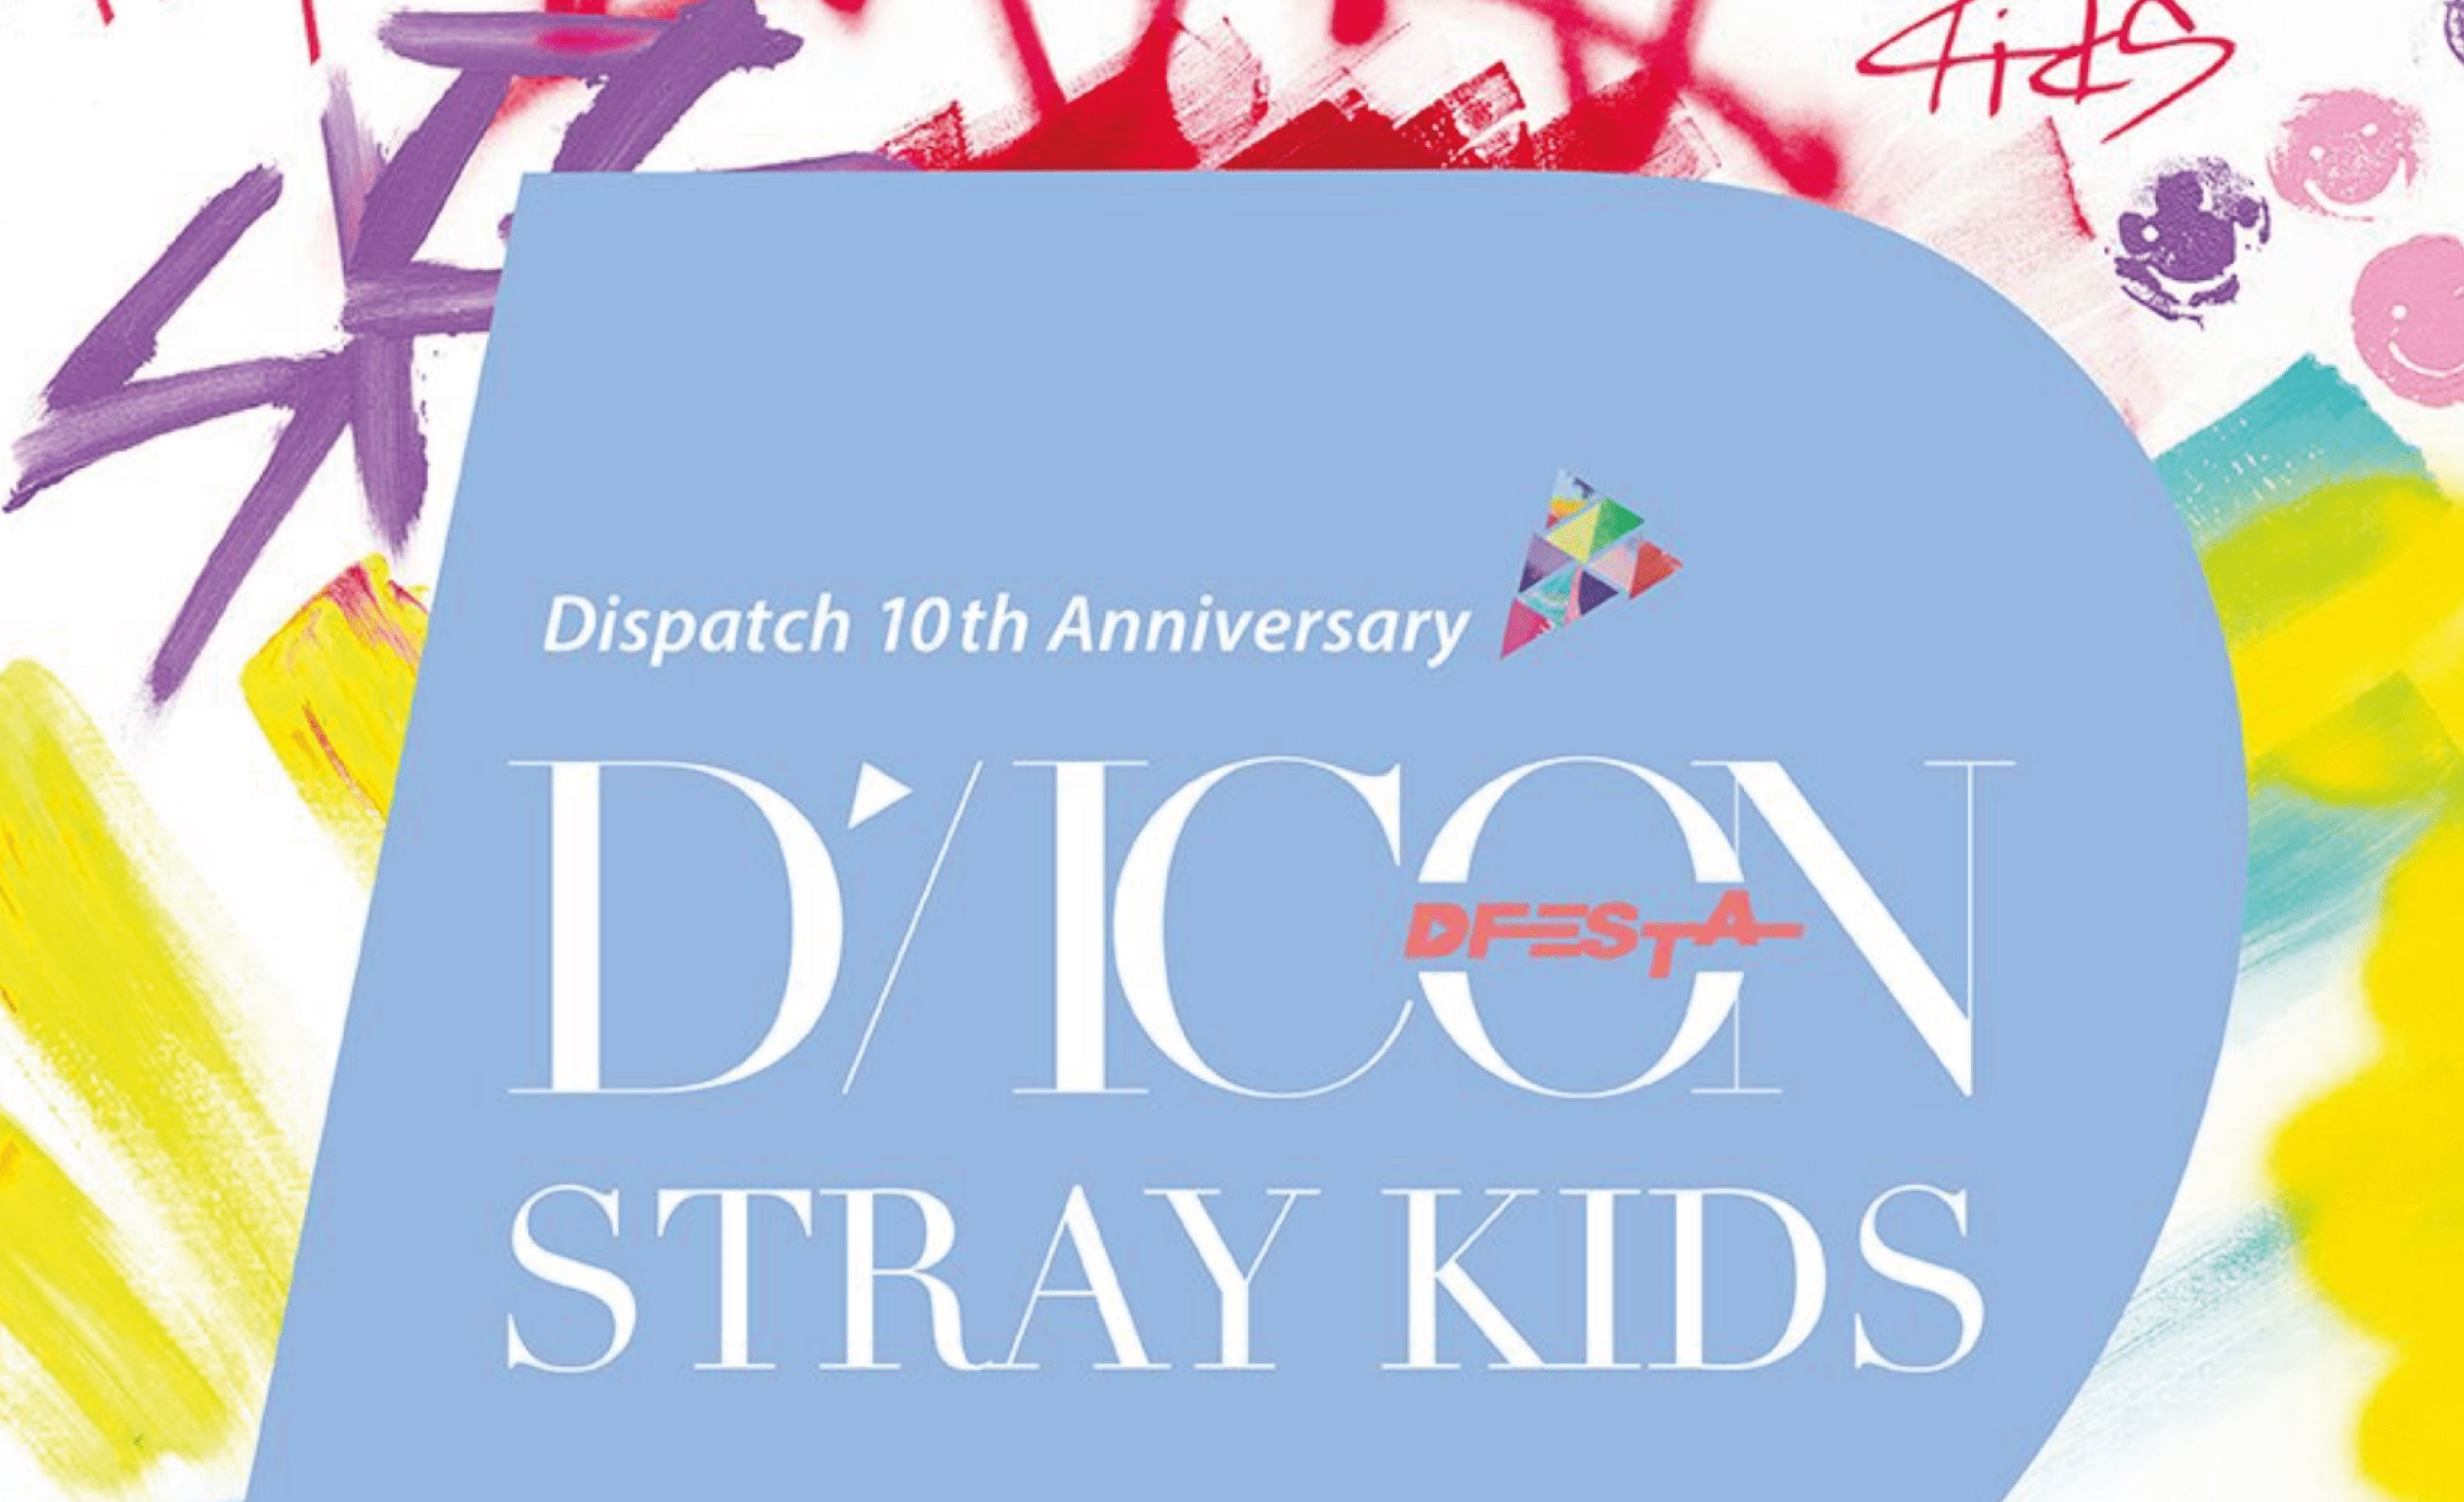 DICON präsentiert eine weitere Jubiläumsausgabe: Stray Kids!